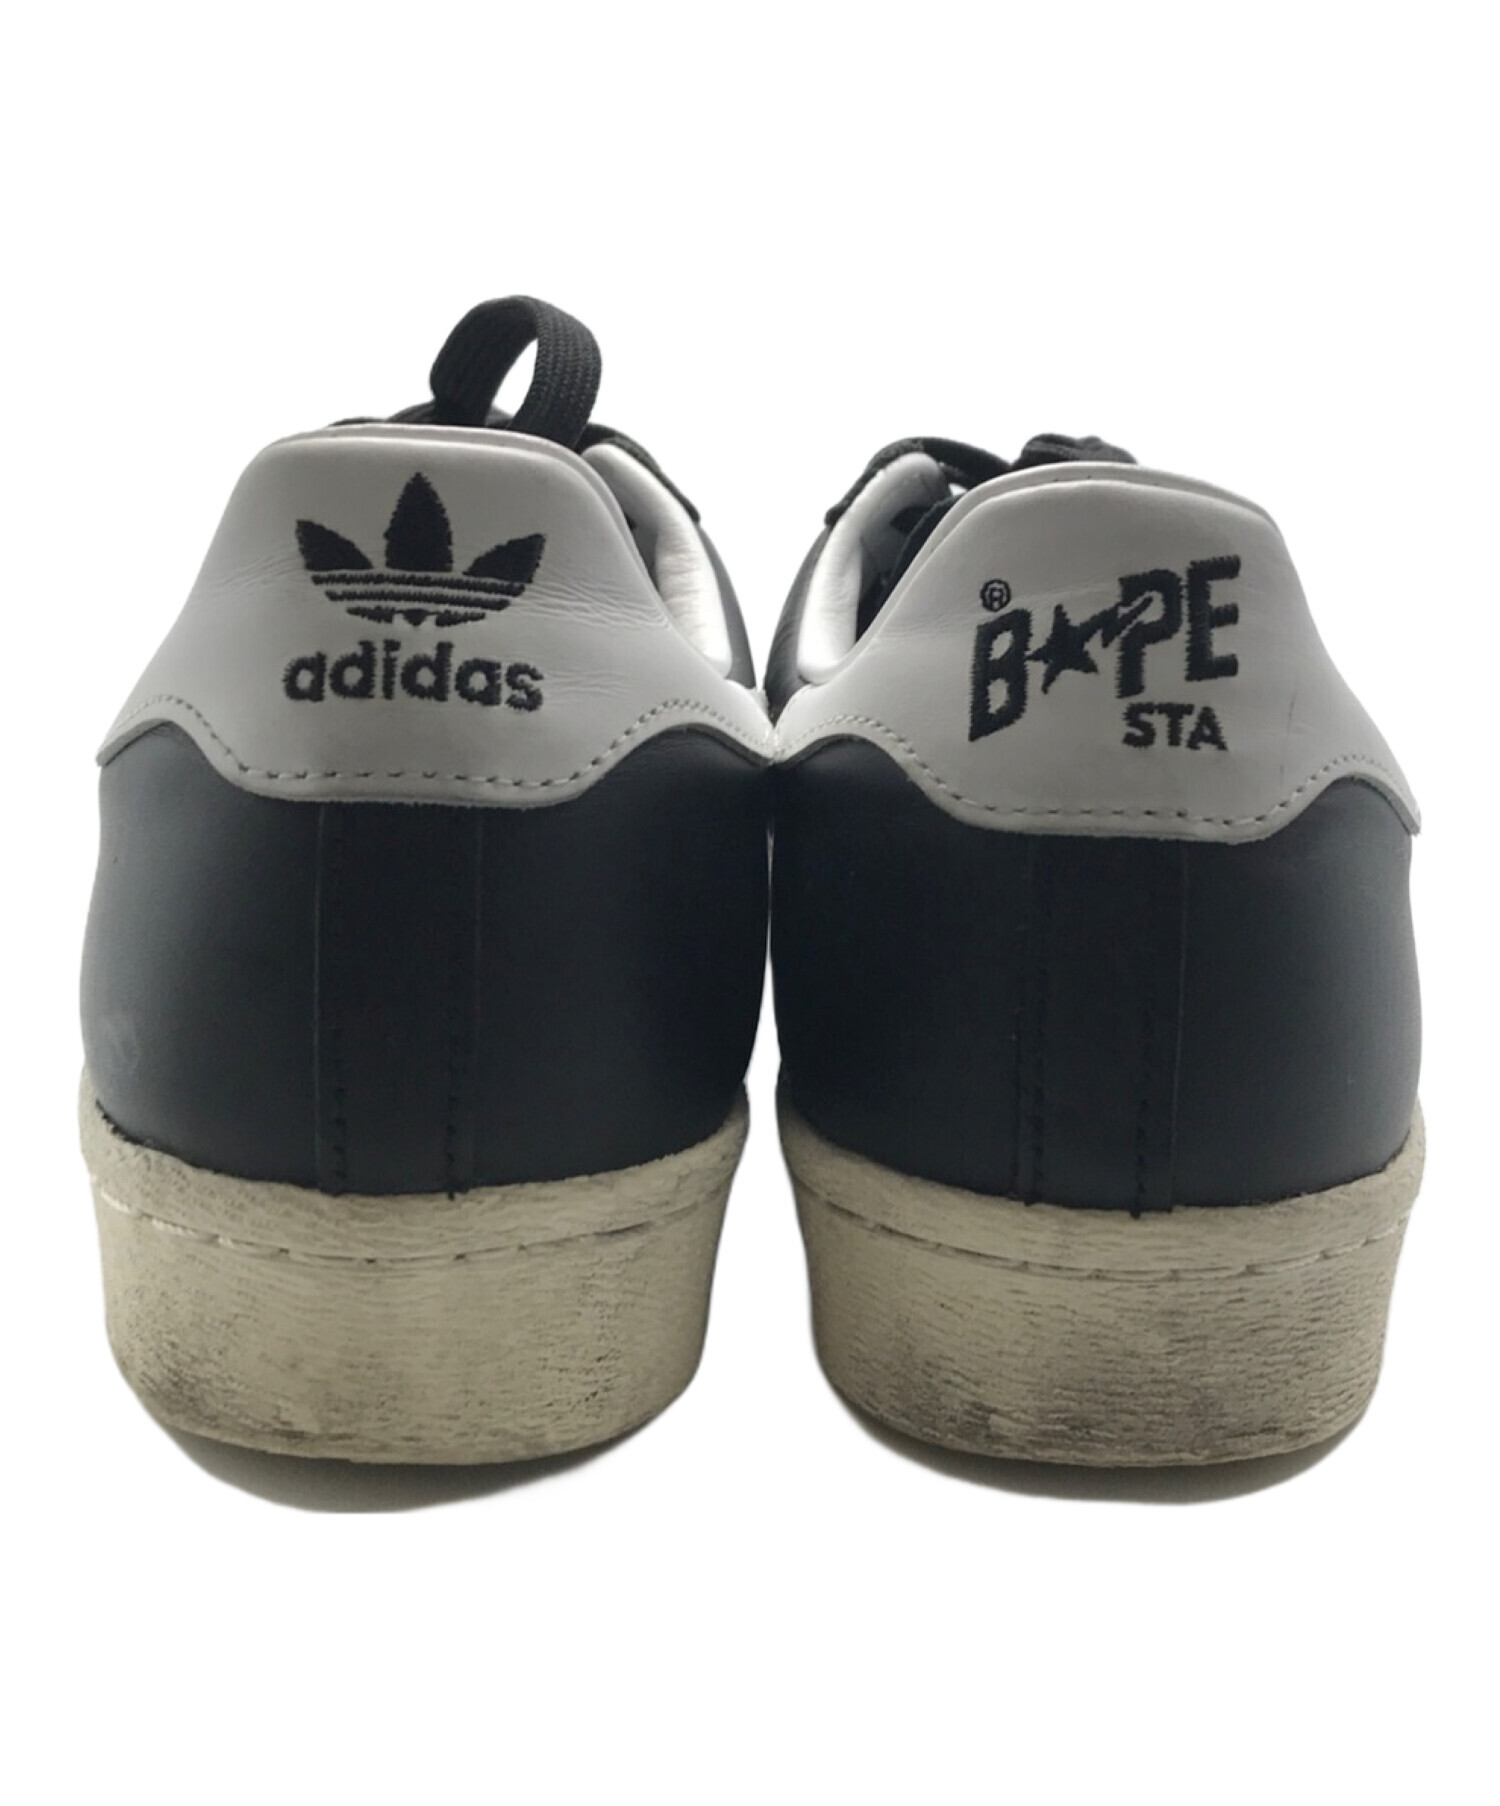 adidas (アディダス) A BATHING APE (アベイシングエイプ) スーパースター 80S BAPE ブラック×ホワイト サイズ:27㎝